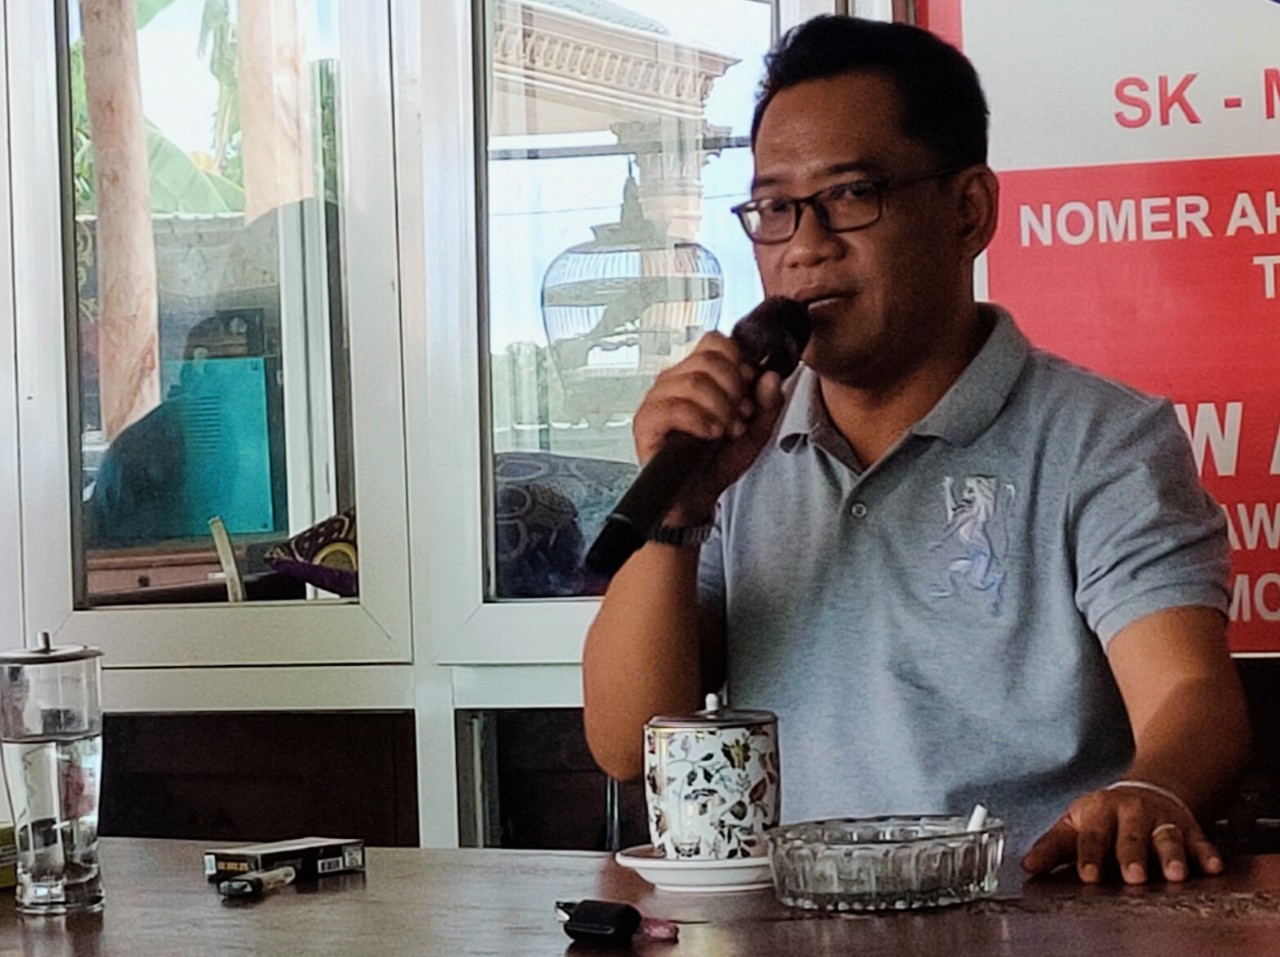 Relawan Kopra Nusantara Sosialisasi Pemilu Damai Bersama Insan Pers Mojokerto - Jombang